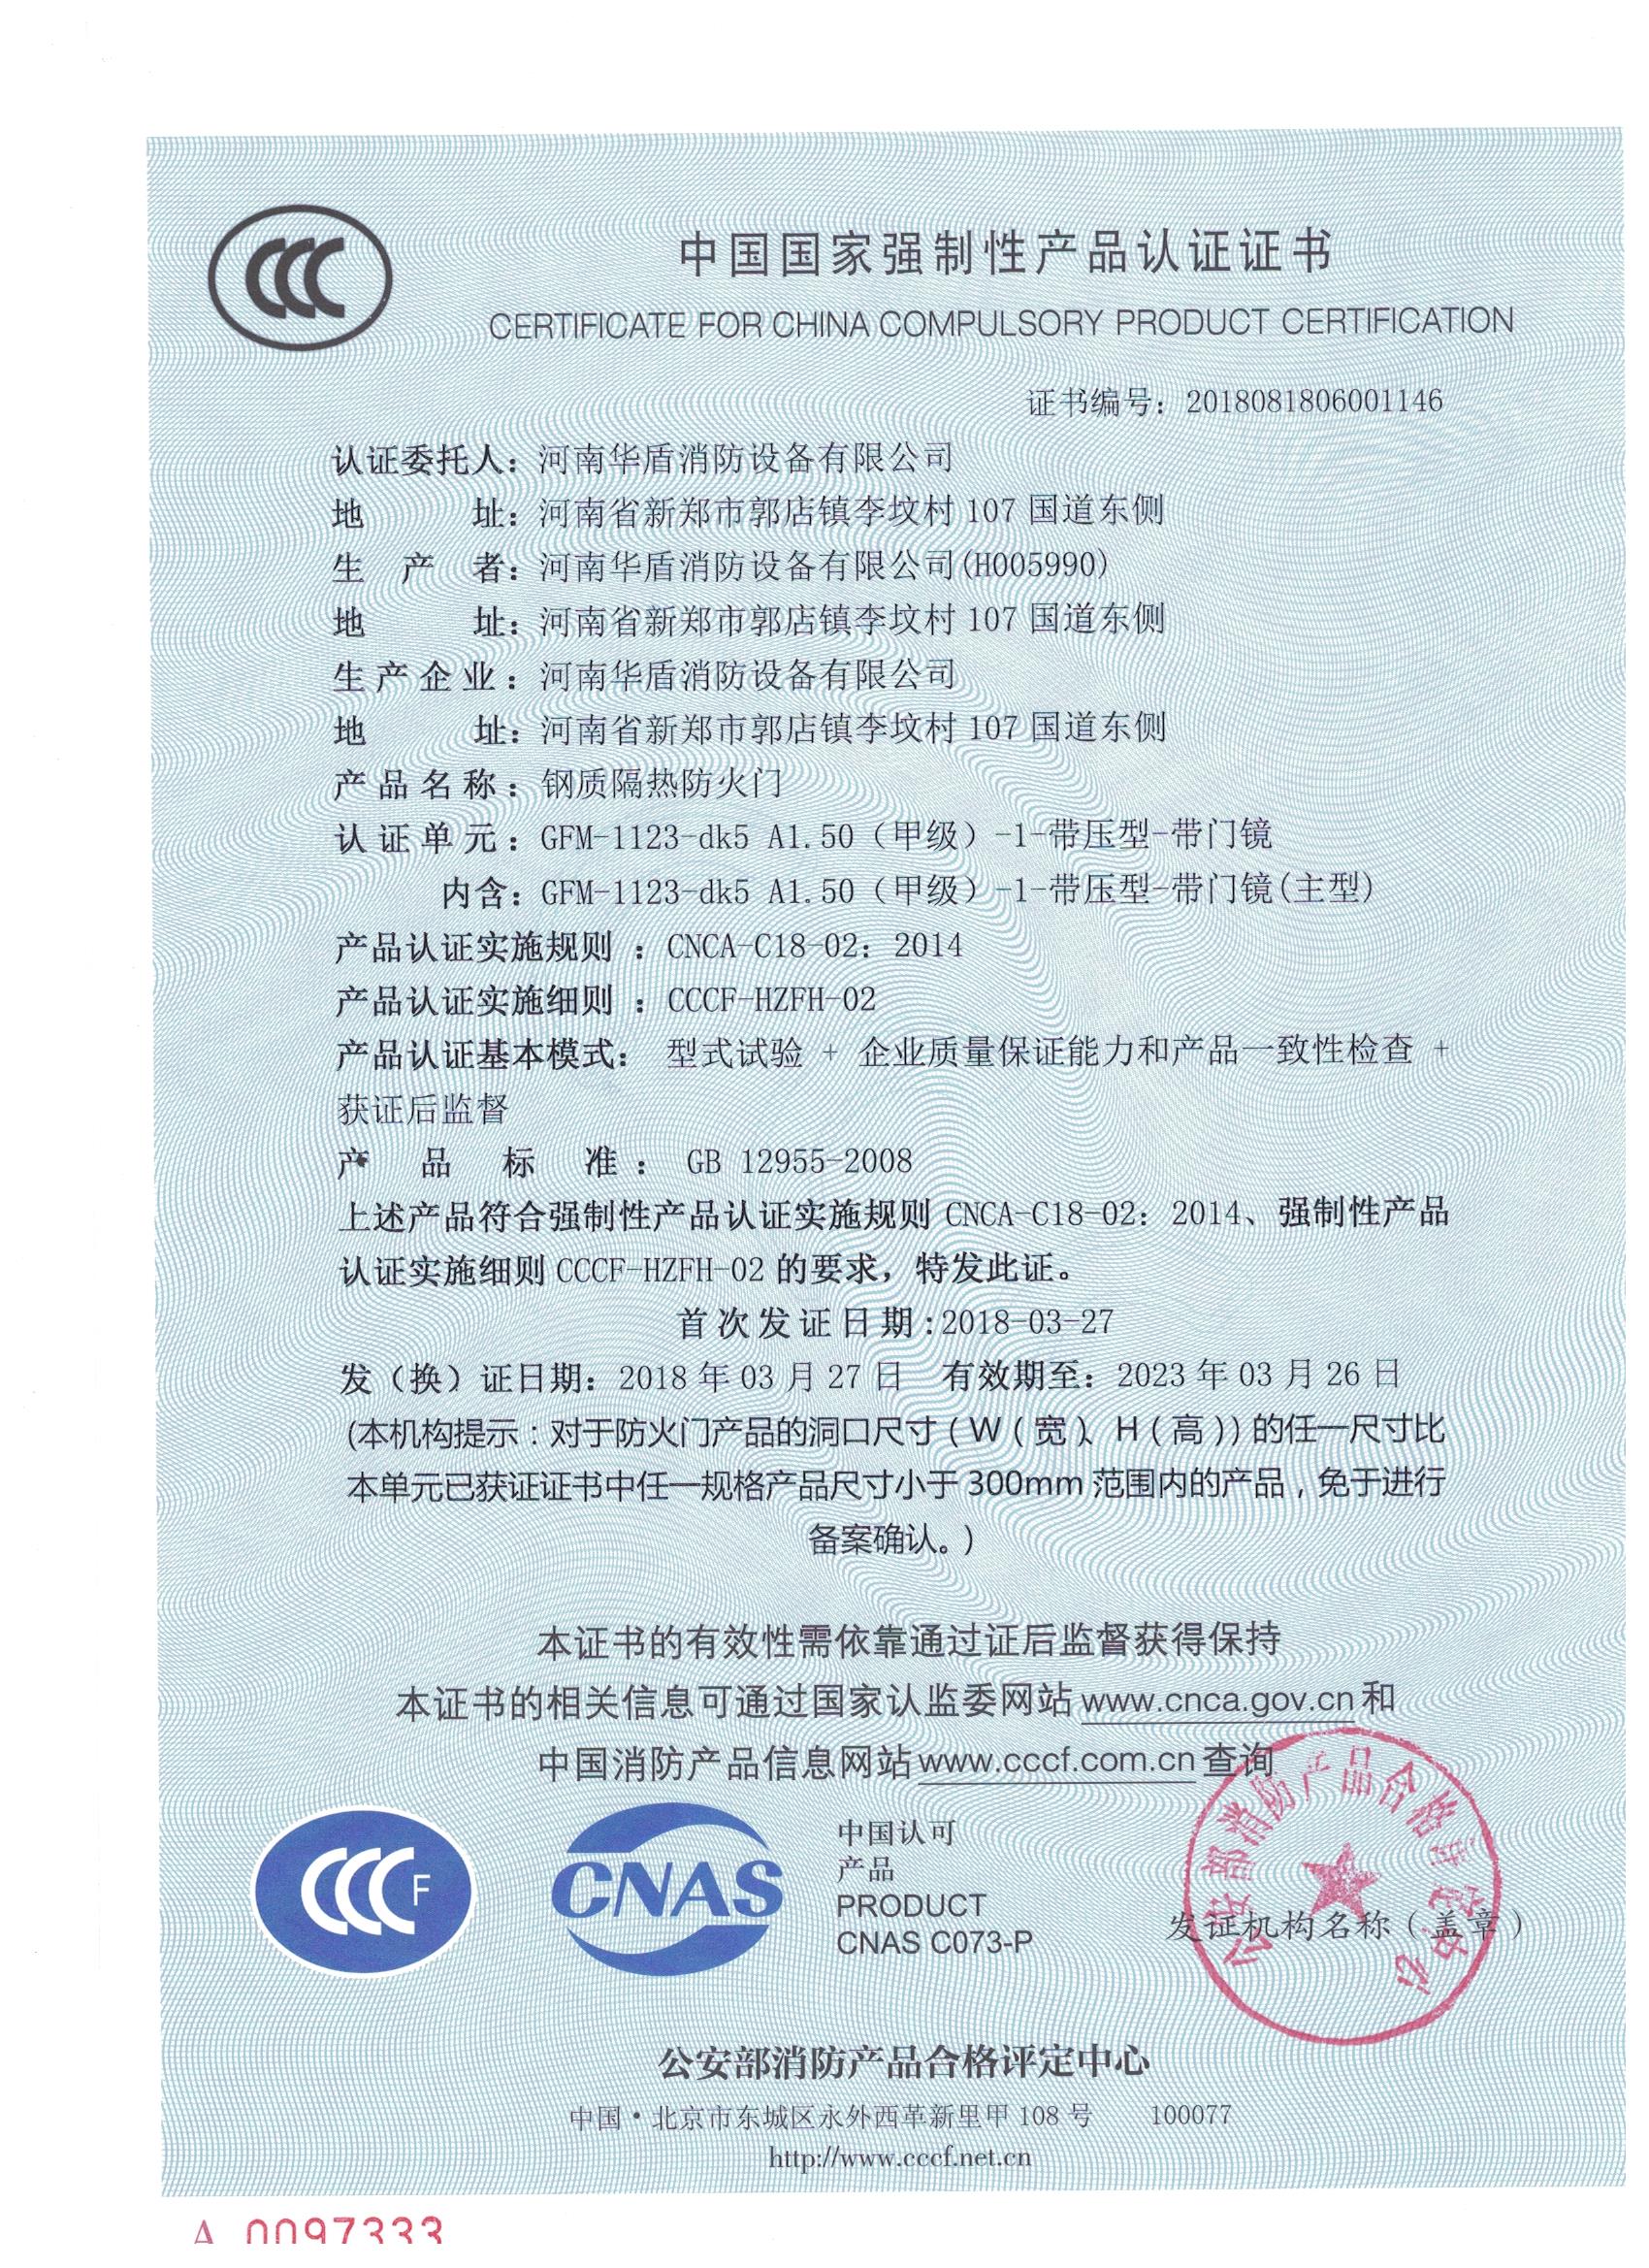 商丘GFM-1123-dk5A1.50(甲级）-1-3C证书